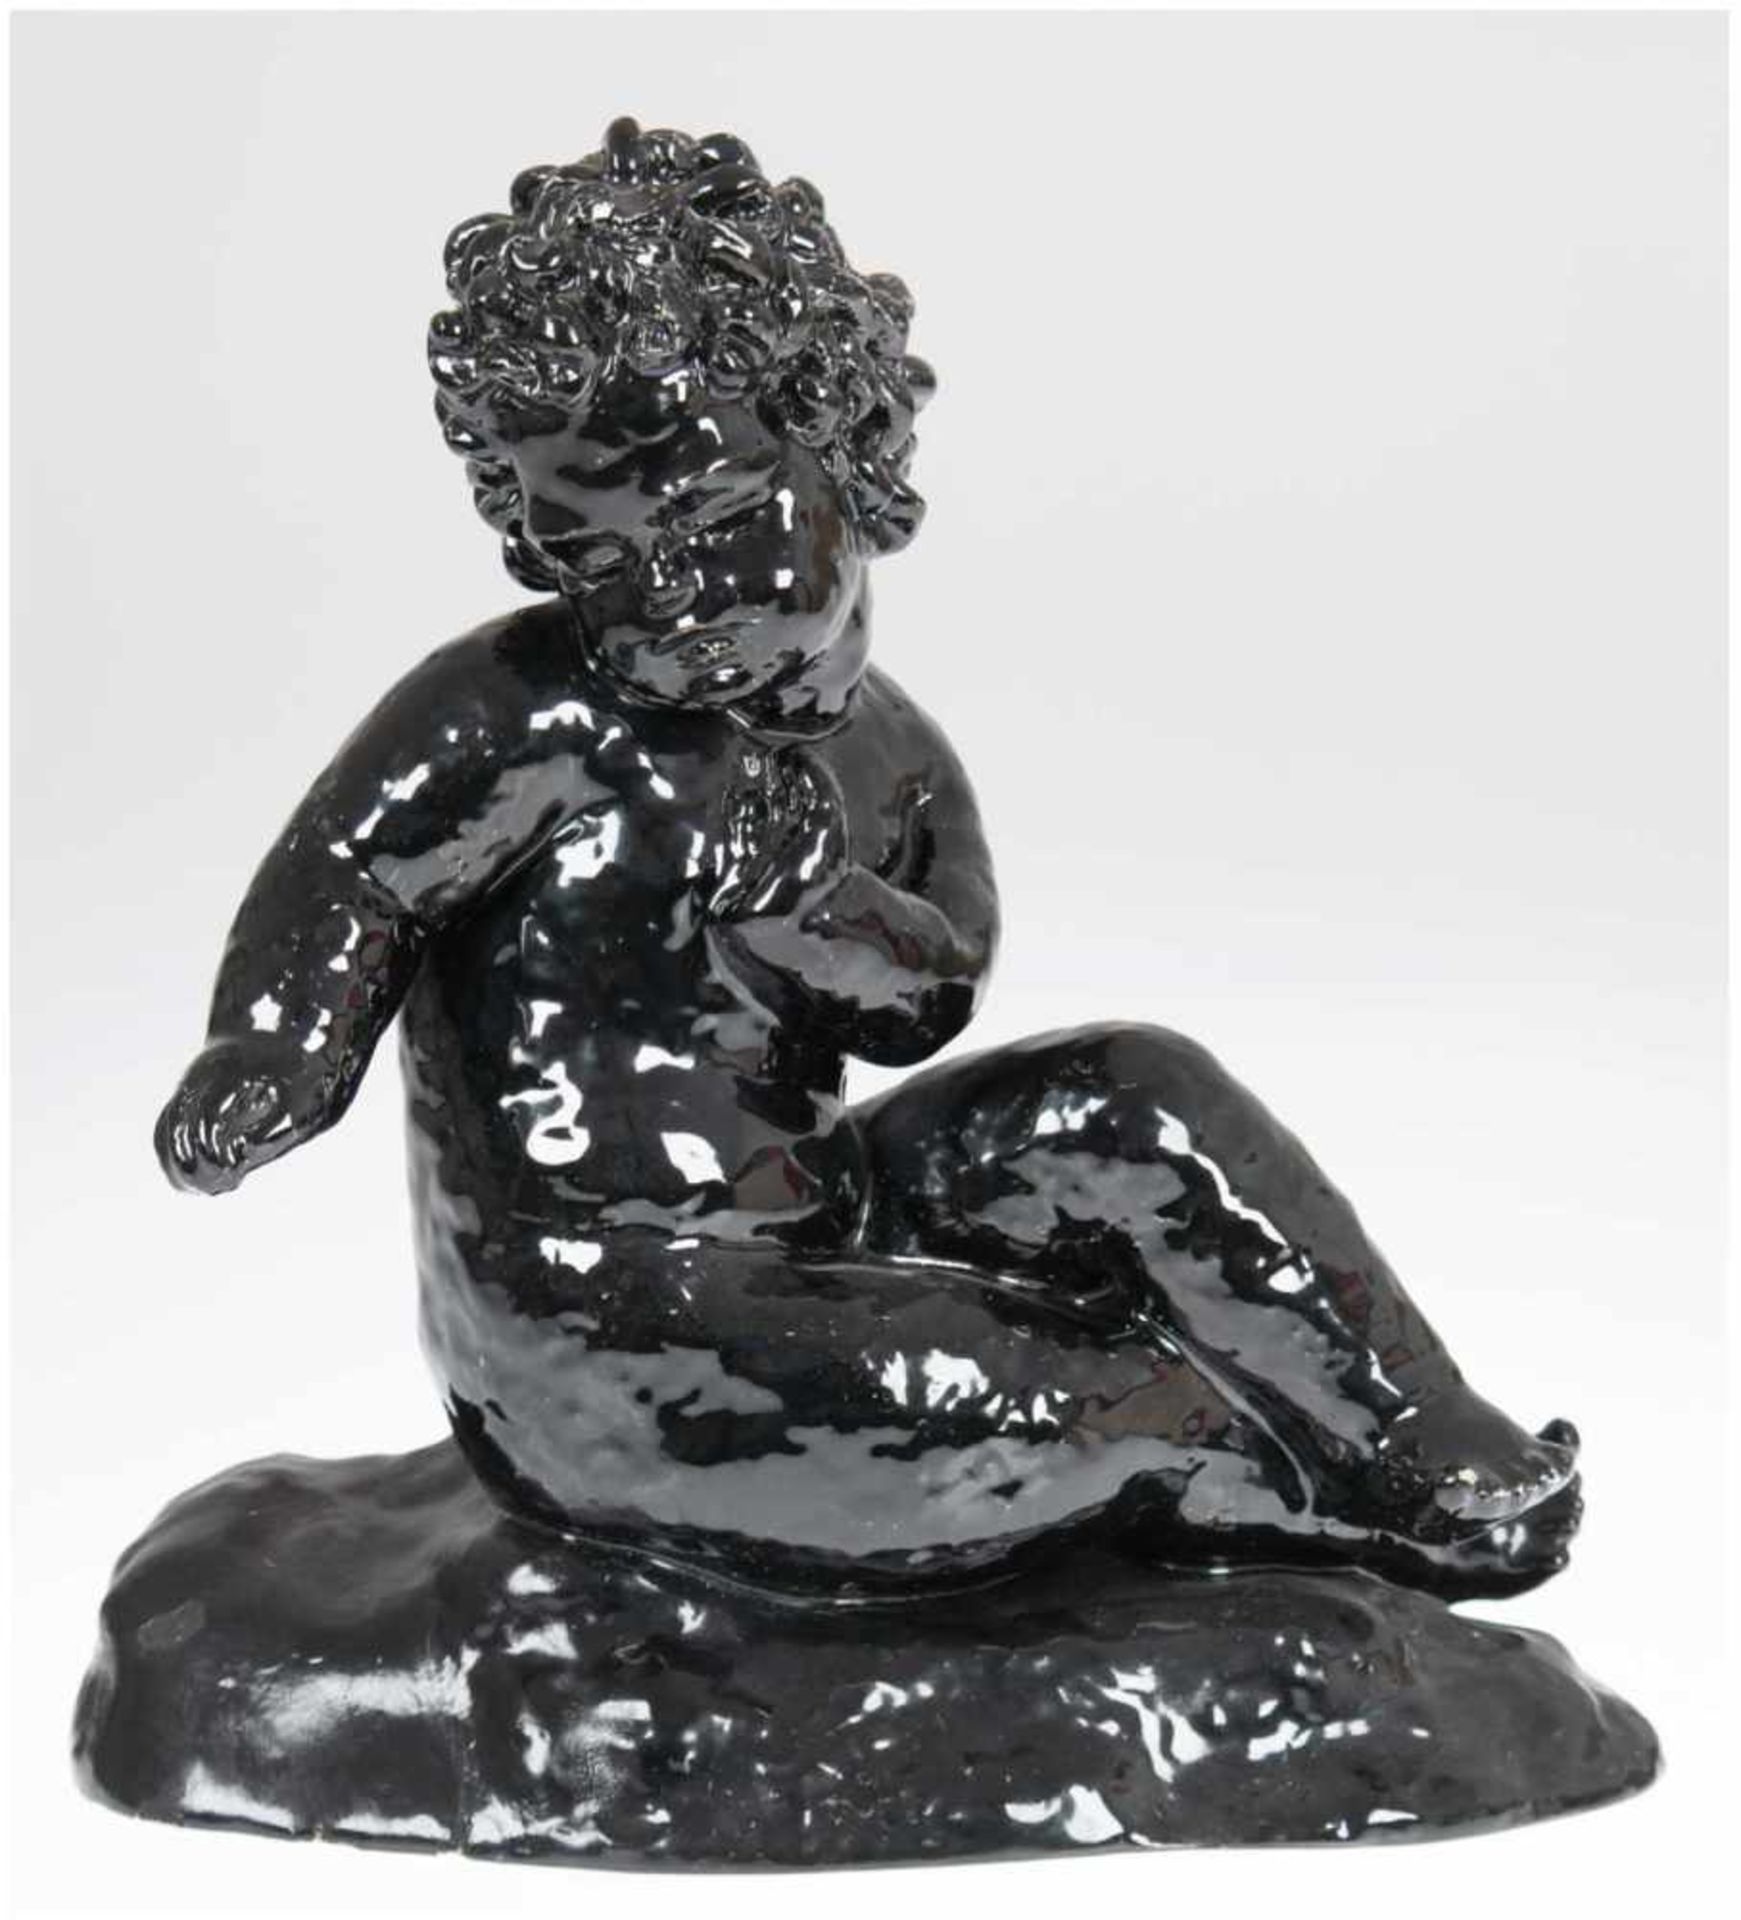 Goldscheider-Figur "Sitzender Putto", Wien, Keramik, schwarz glasiert, gemarkt, Preß-Nr.5305 1 10,